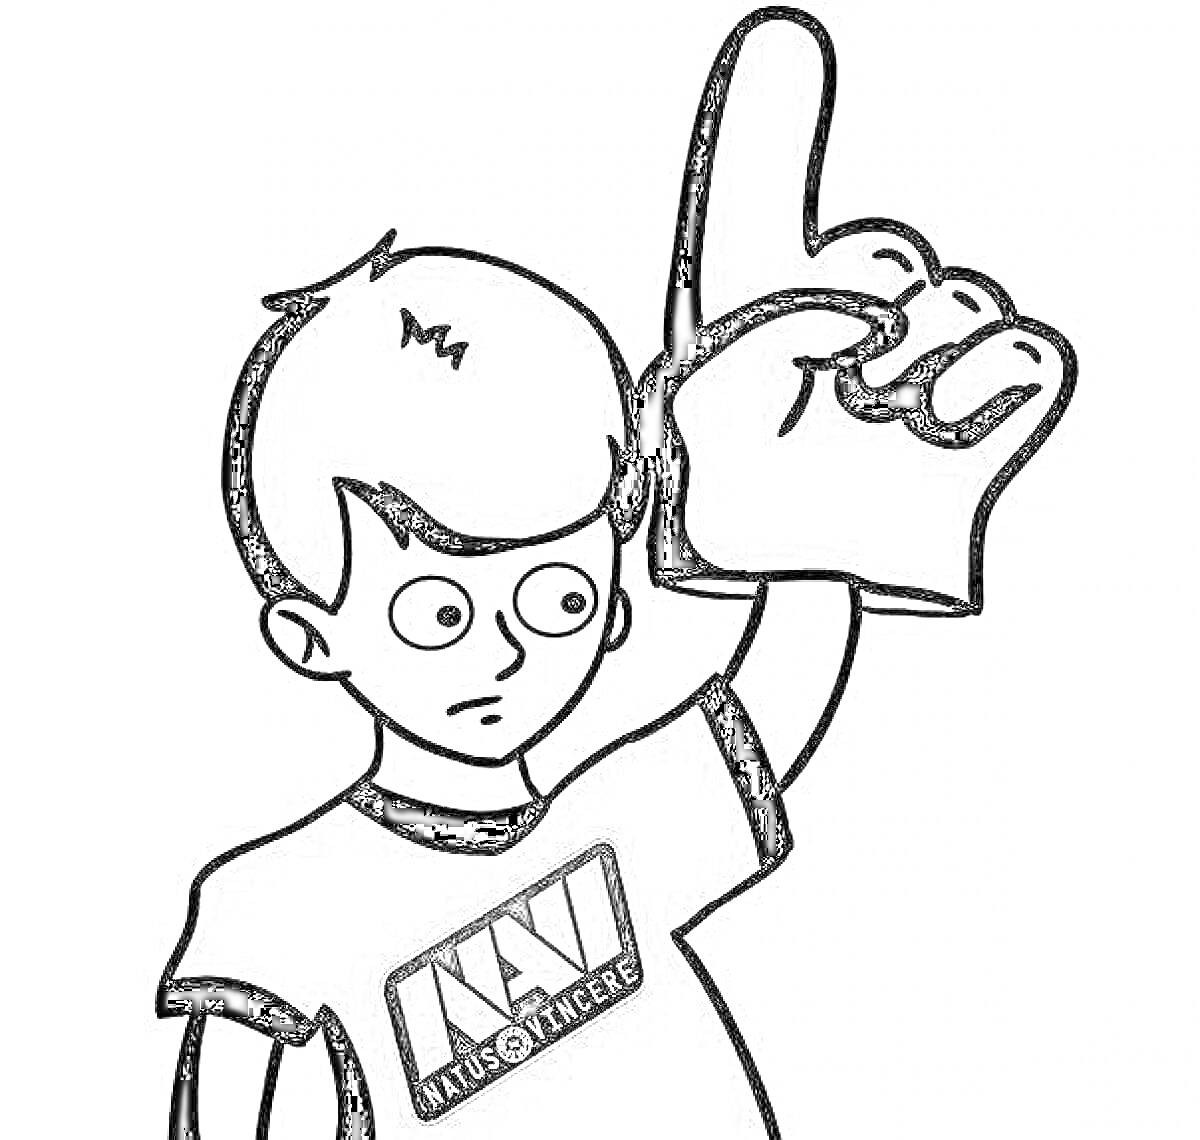 мальчик с надетой на руку гигантской пенопластовой ладонью, одет в футболку с логотипом 